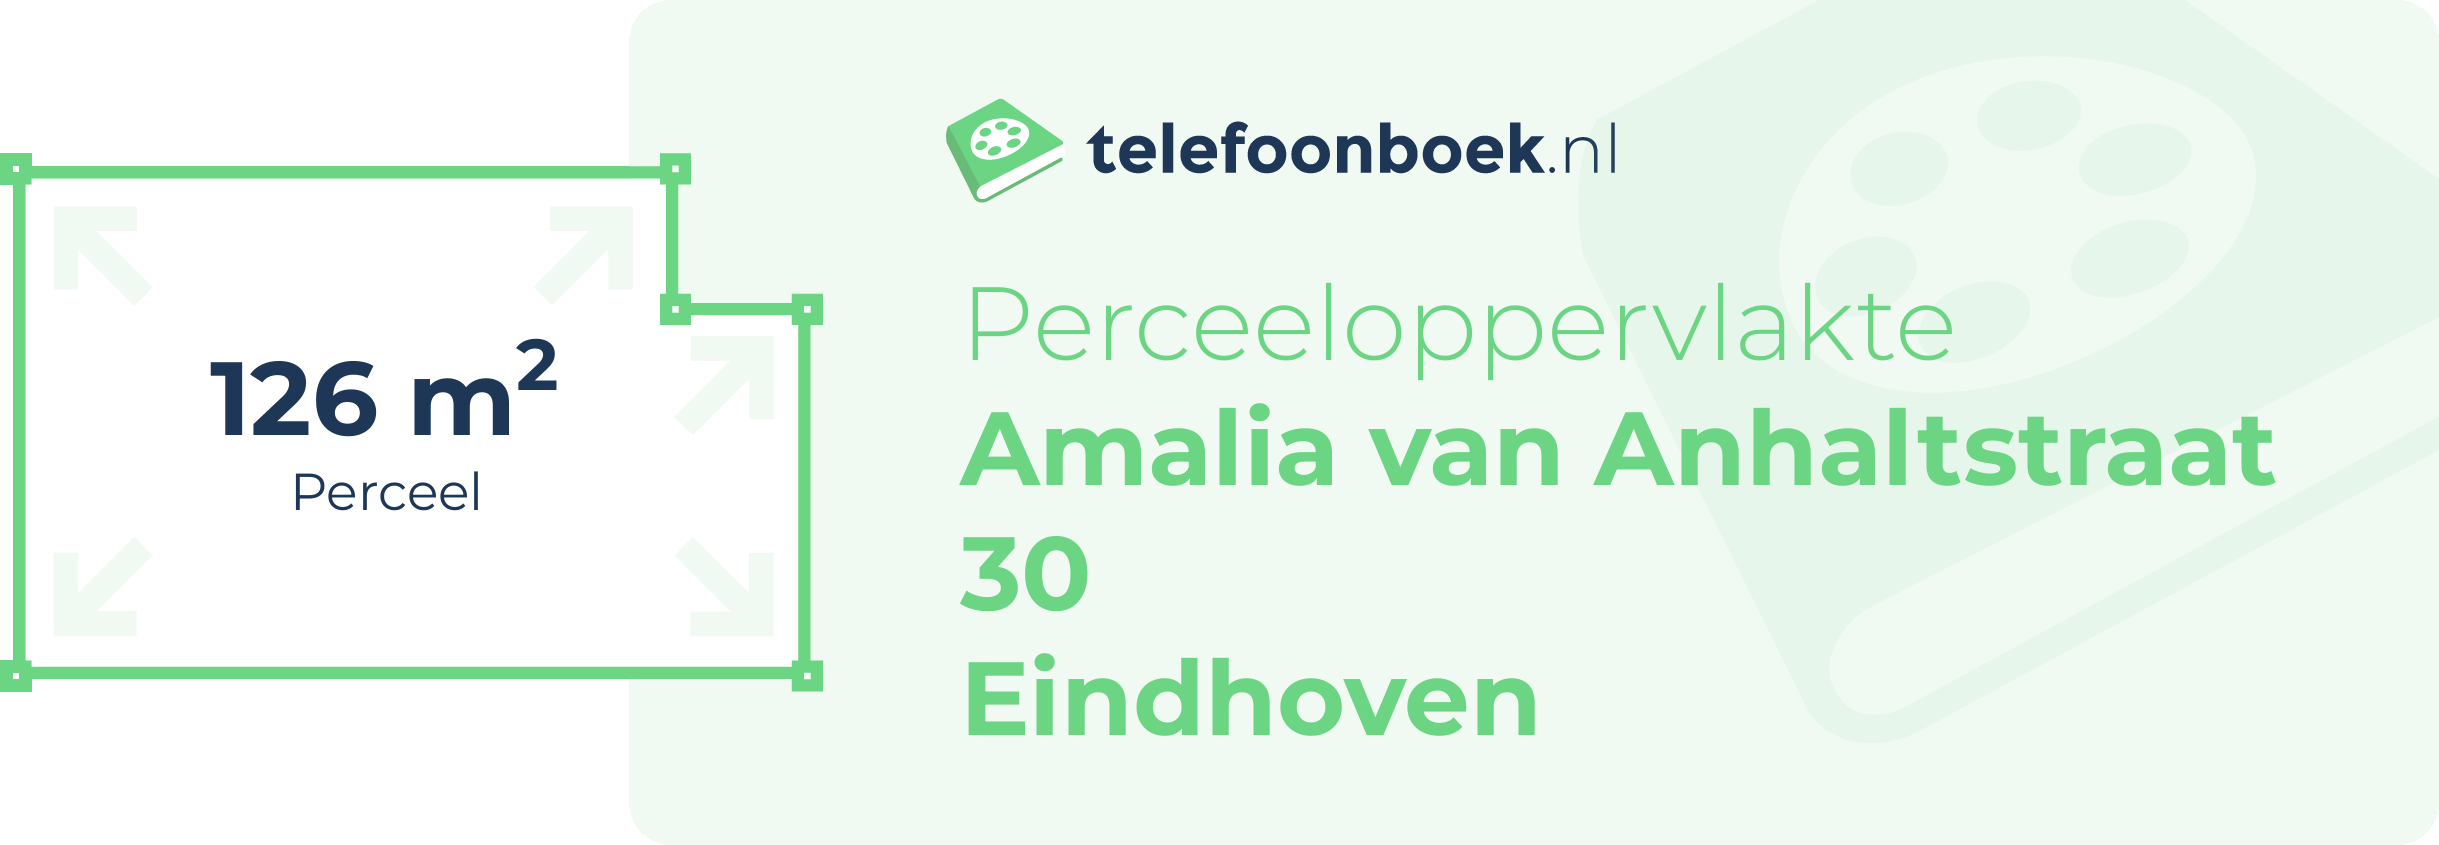 Perceeloppervlakte Amalia Van Anhaltstraat 30 Eindhoven